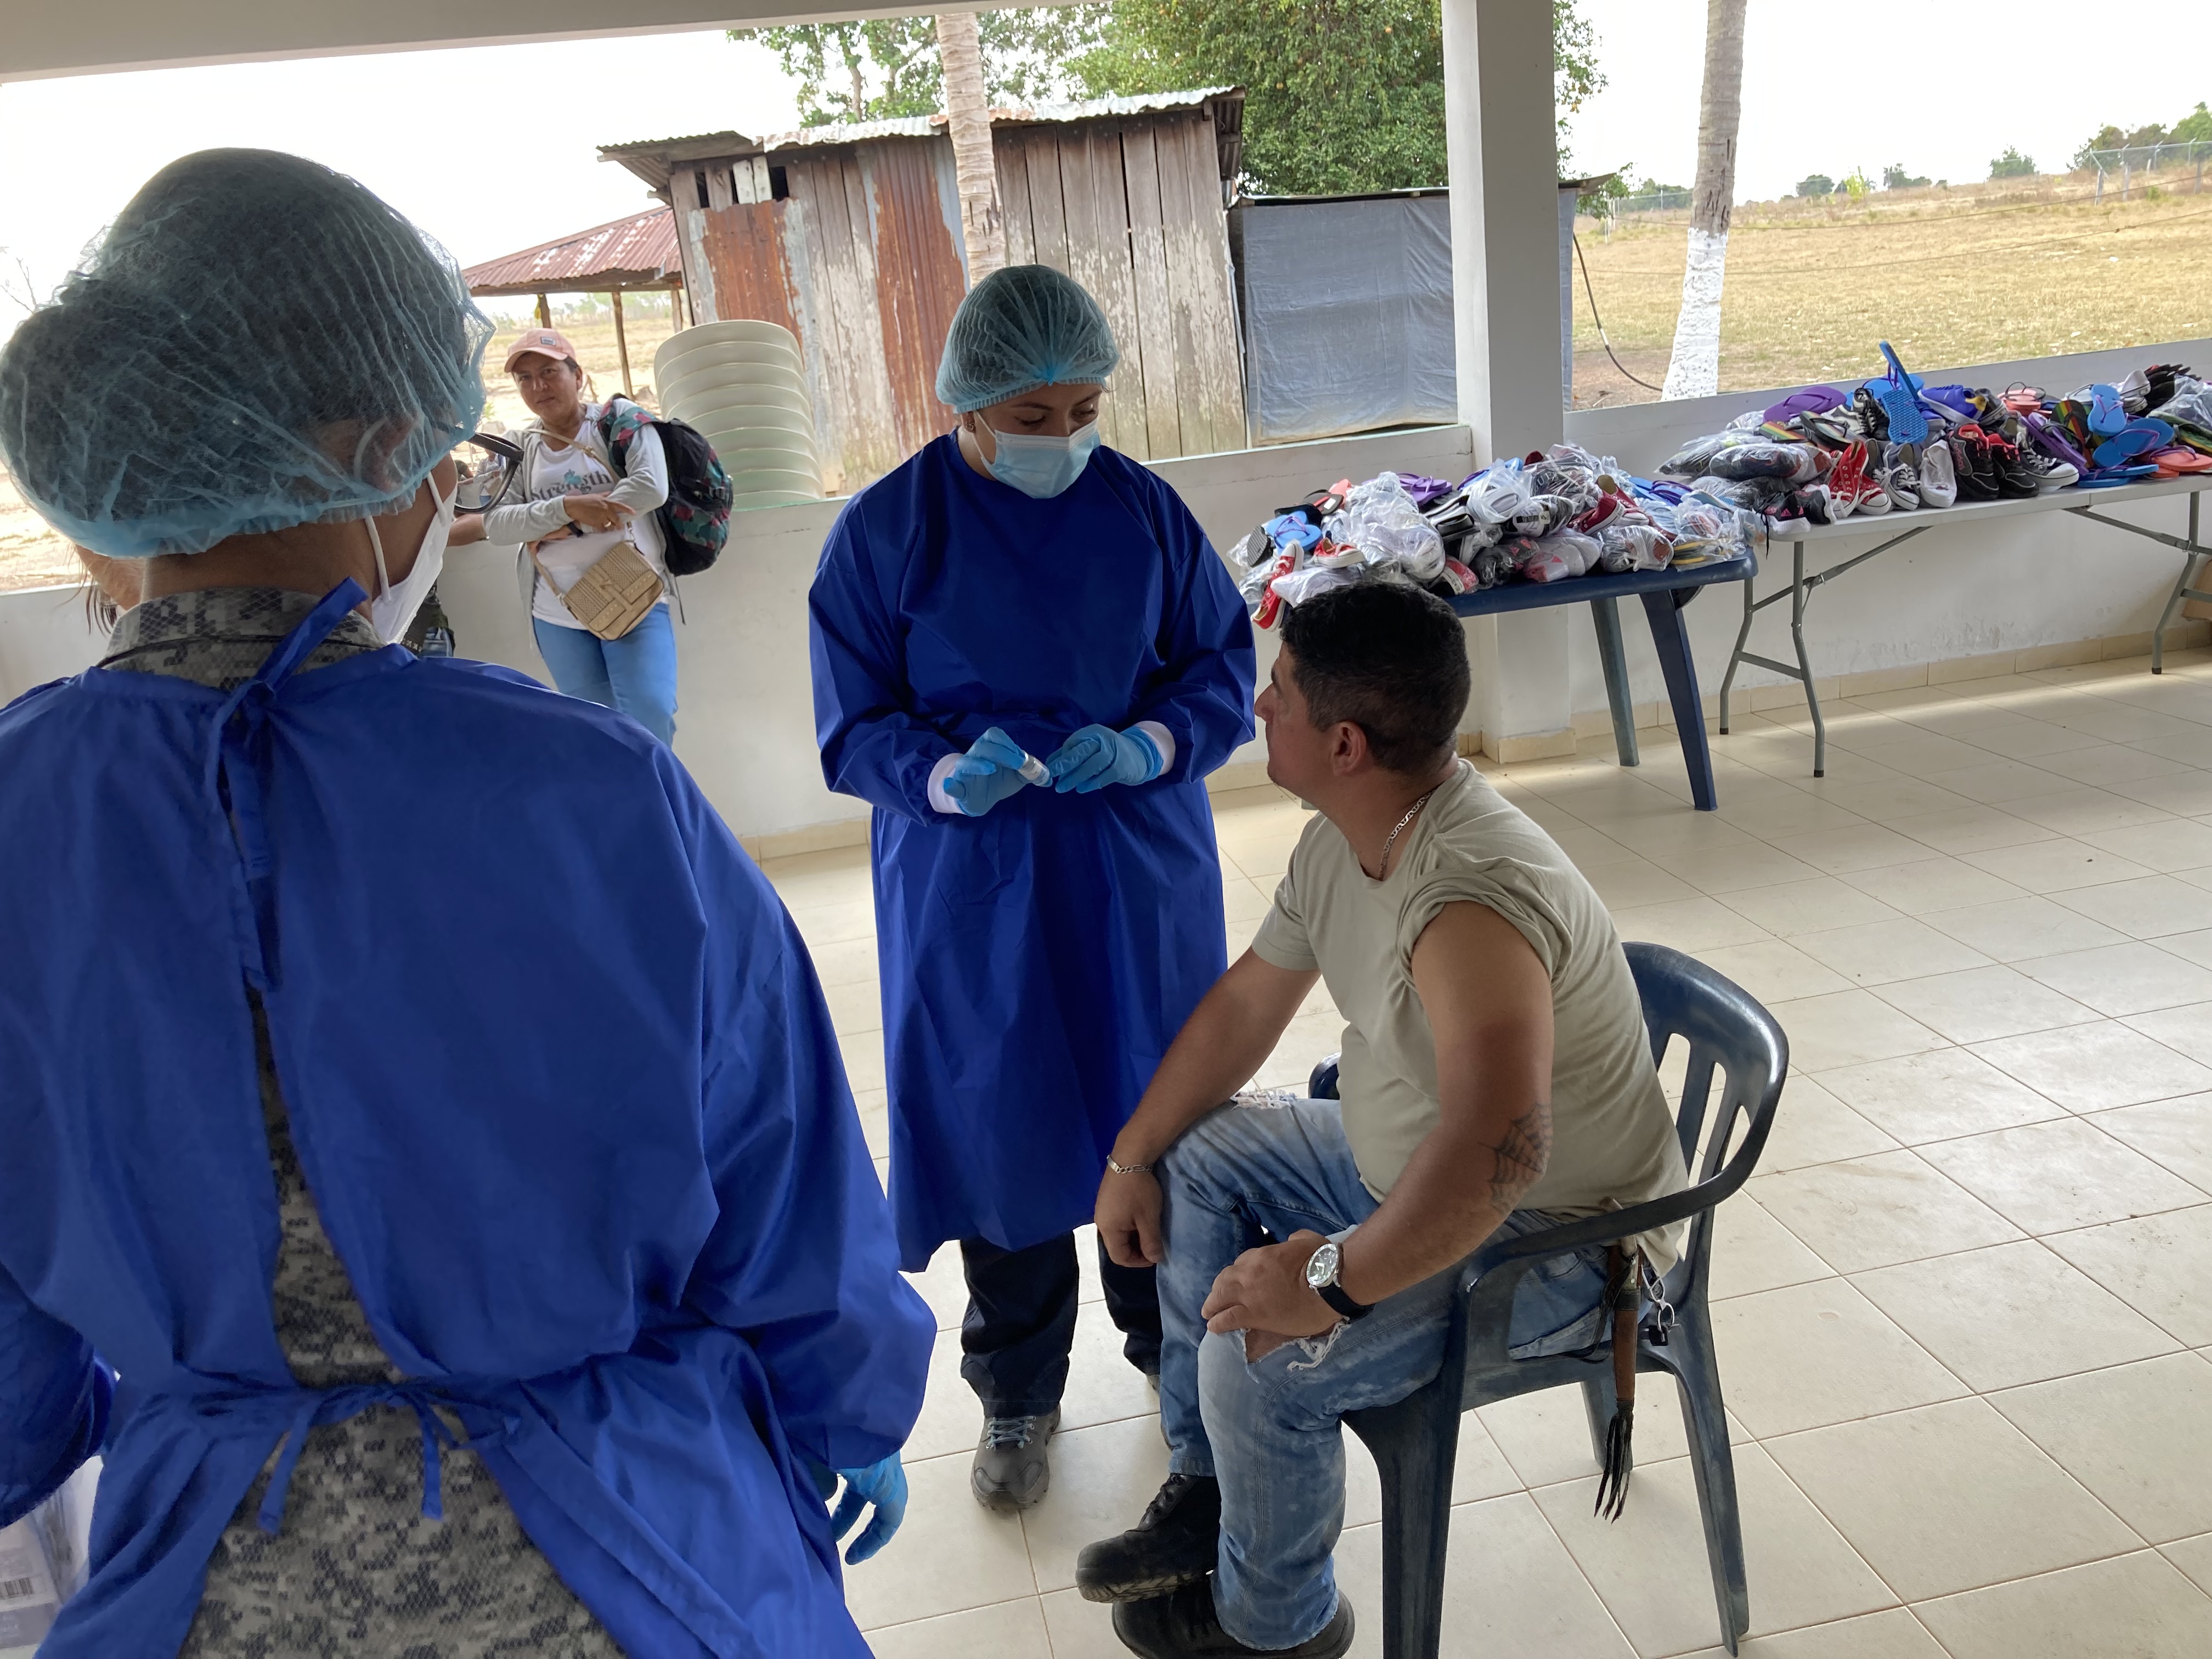 En Vichada, su Fuerza Aérea continúa promoviendo el Plan Nacional de Vacunación contra el COVID-19